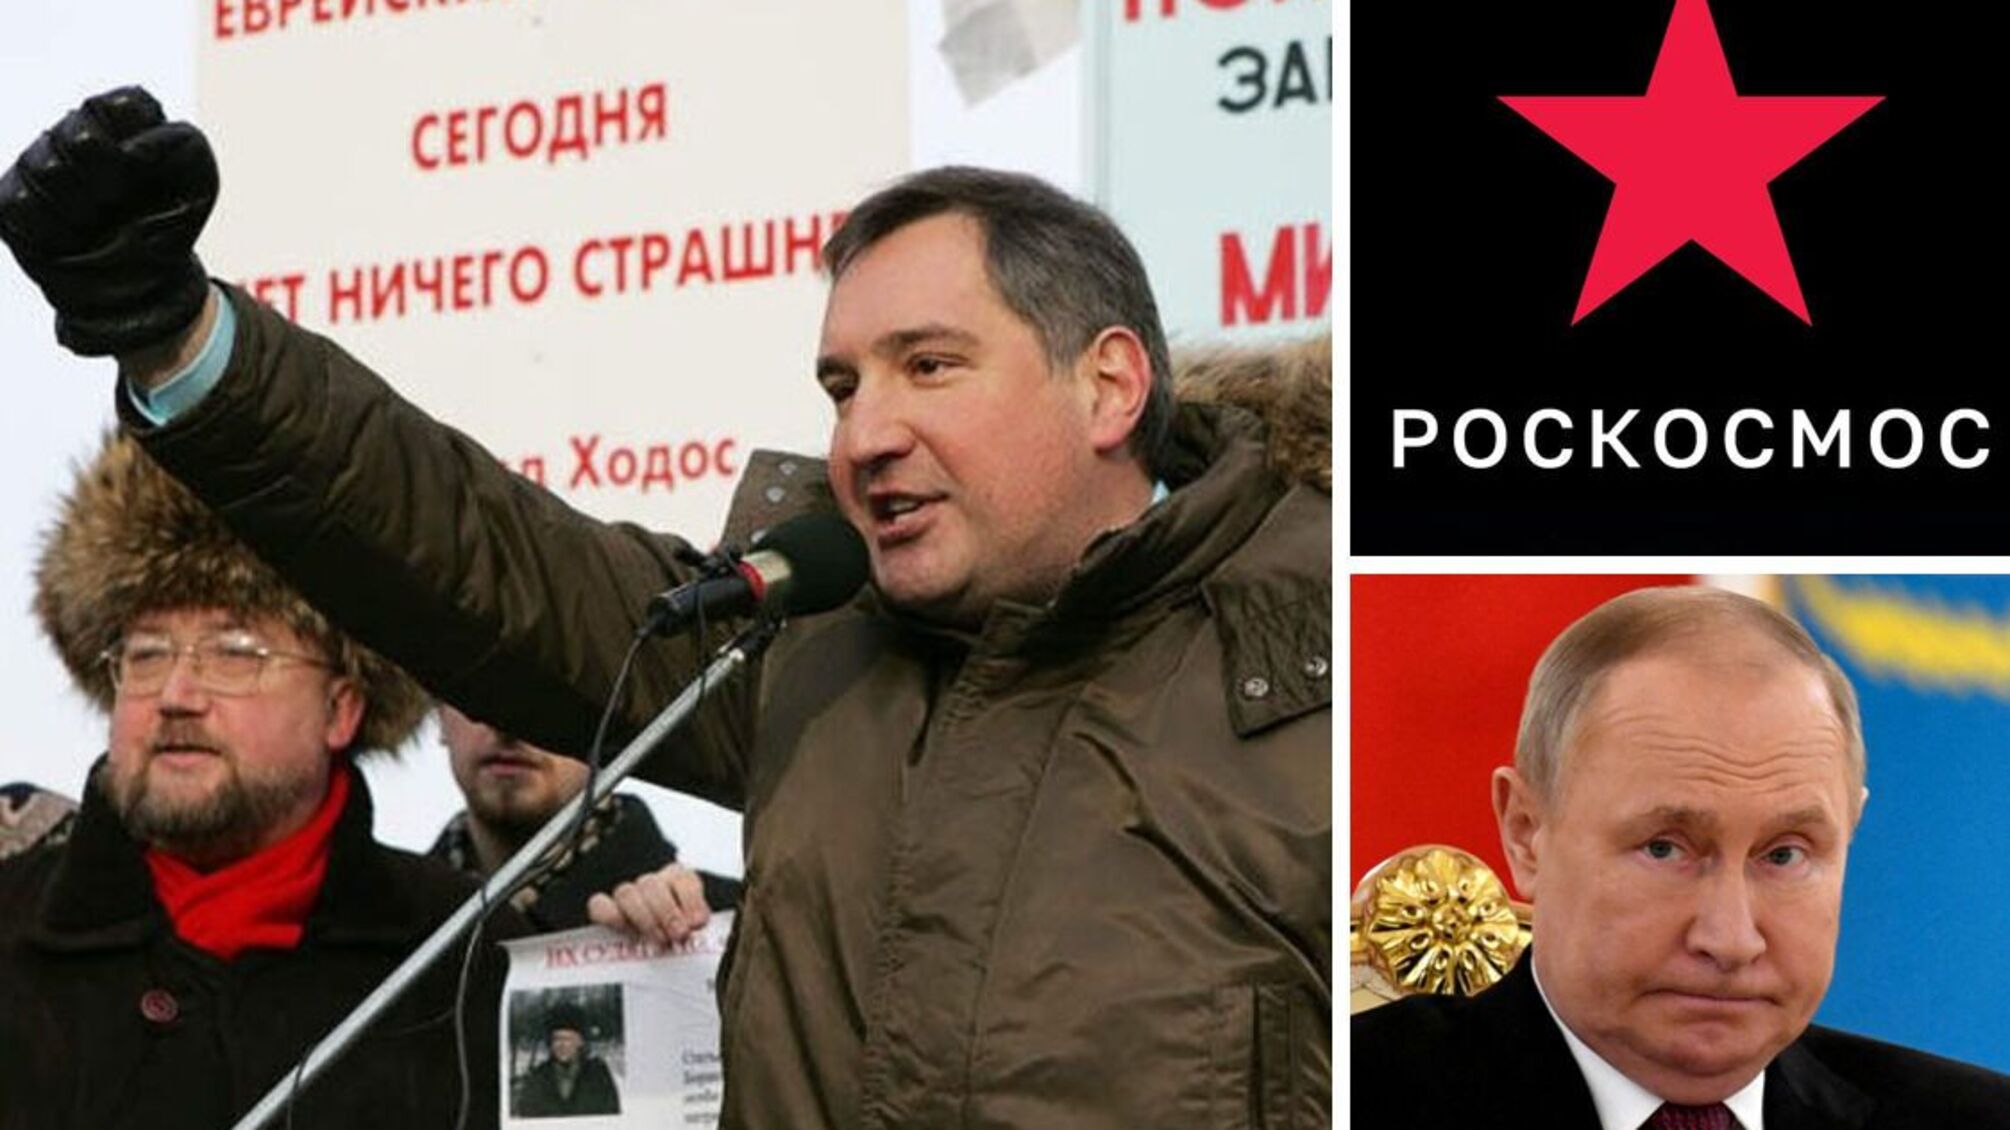 Путін демобілізував Рогозіна з посади гендиректора 'Роскосмоса' - його чекає підвищення в Україні